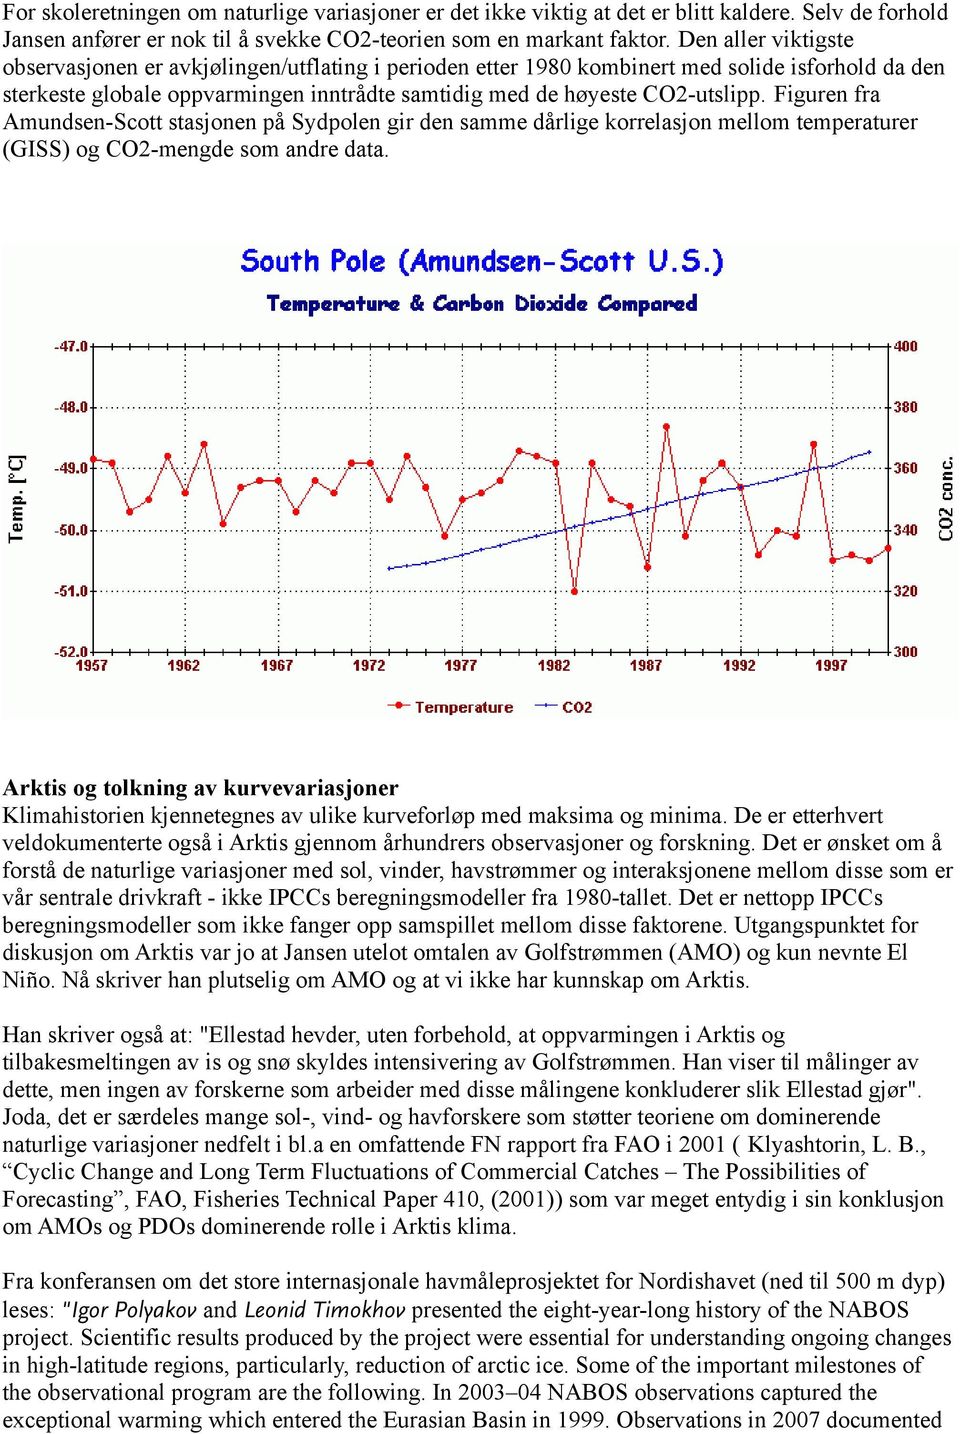 Figuren fra Amundsen-Scott stasjonen på Sydpolen gir den samme dårlige korrelasjon mellom temperaturer (GISS) og CO2-mengde som andre data.